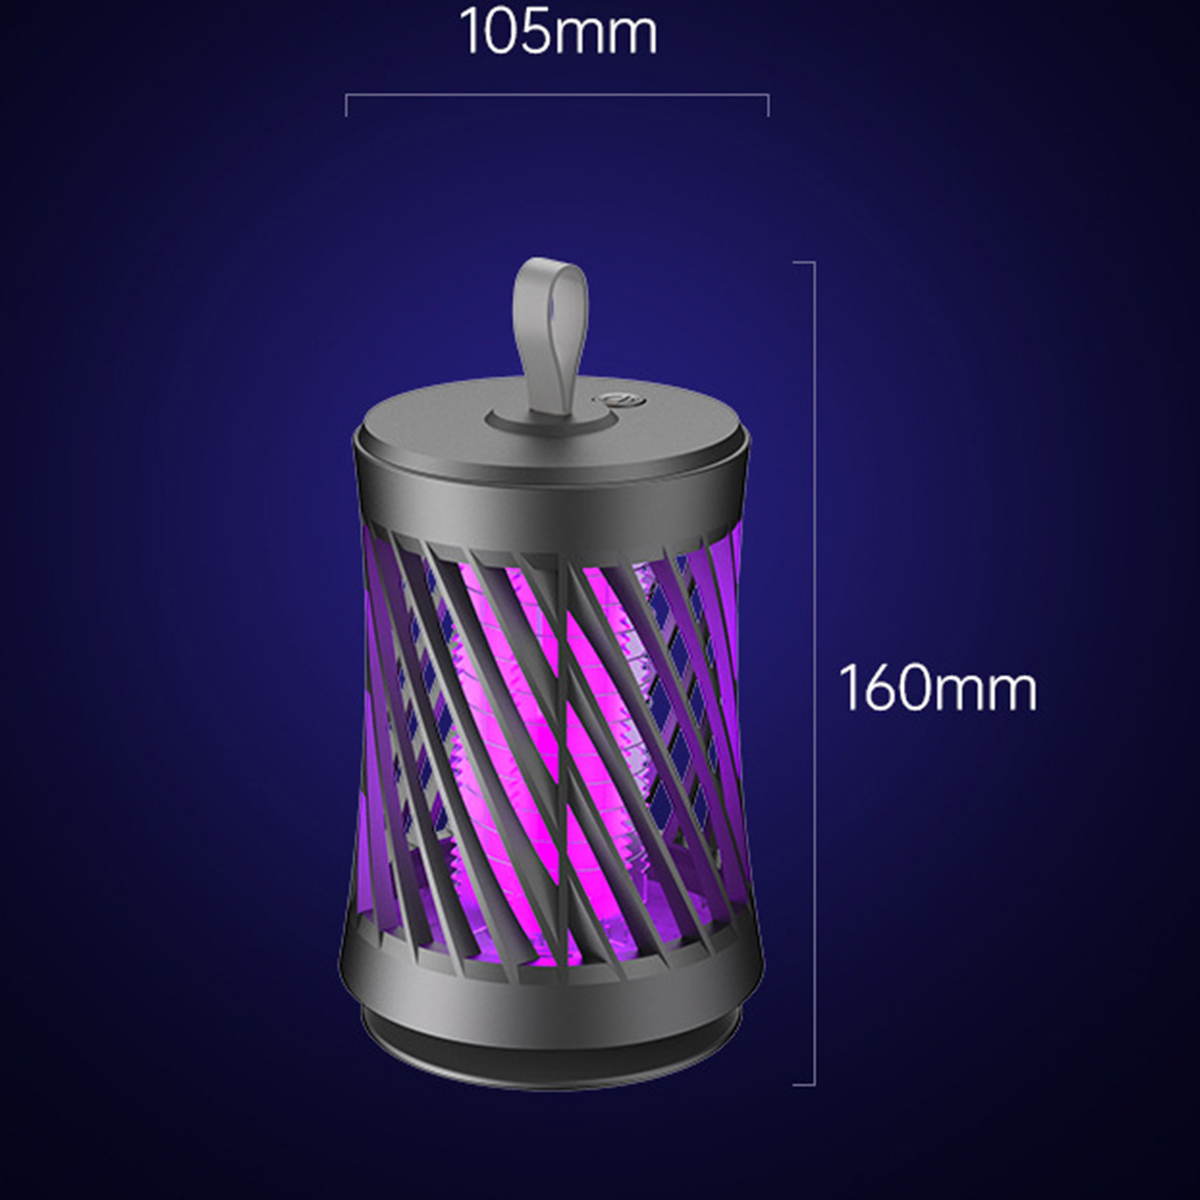 BRIGHTAKE USB Wiederaufladbare Moskito-Killer-Lampe Stiller Photokatalysator Insektenvernichter Moskito-Fang|50sqm